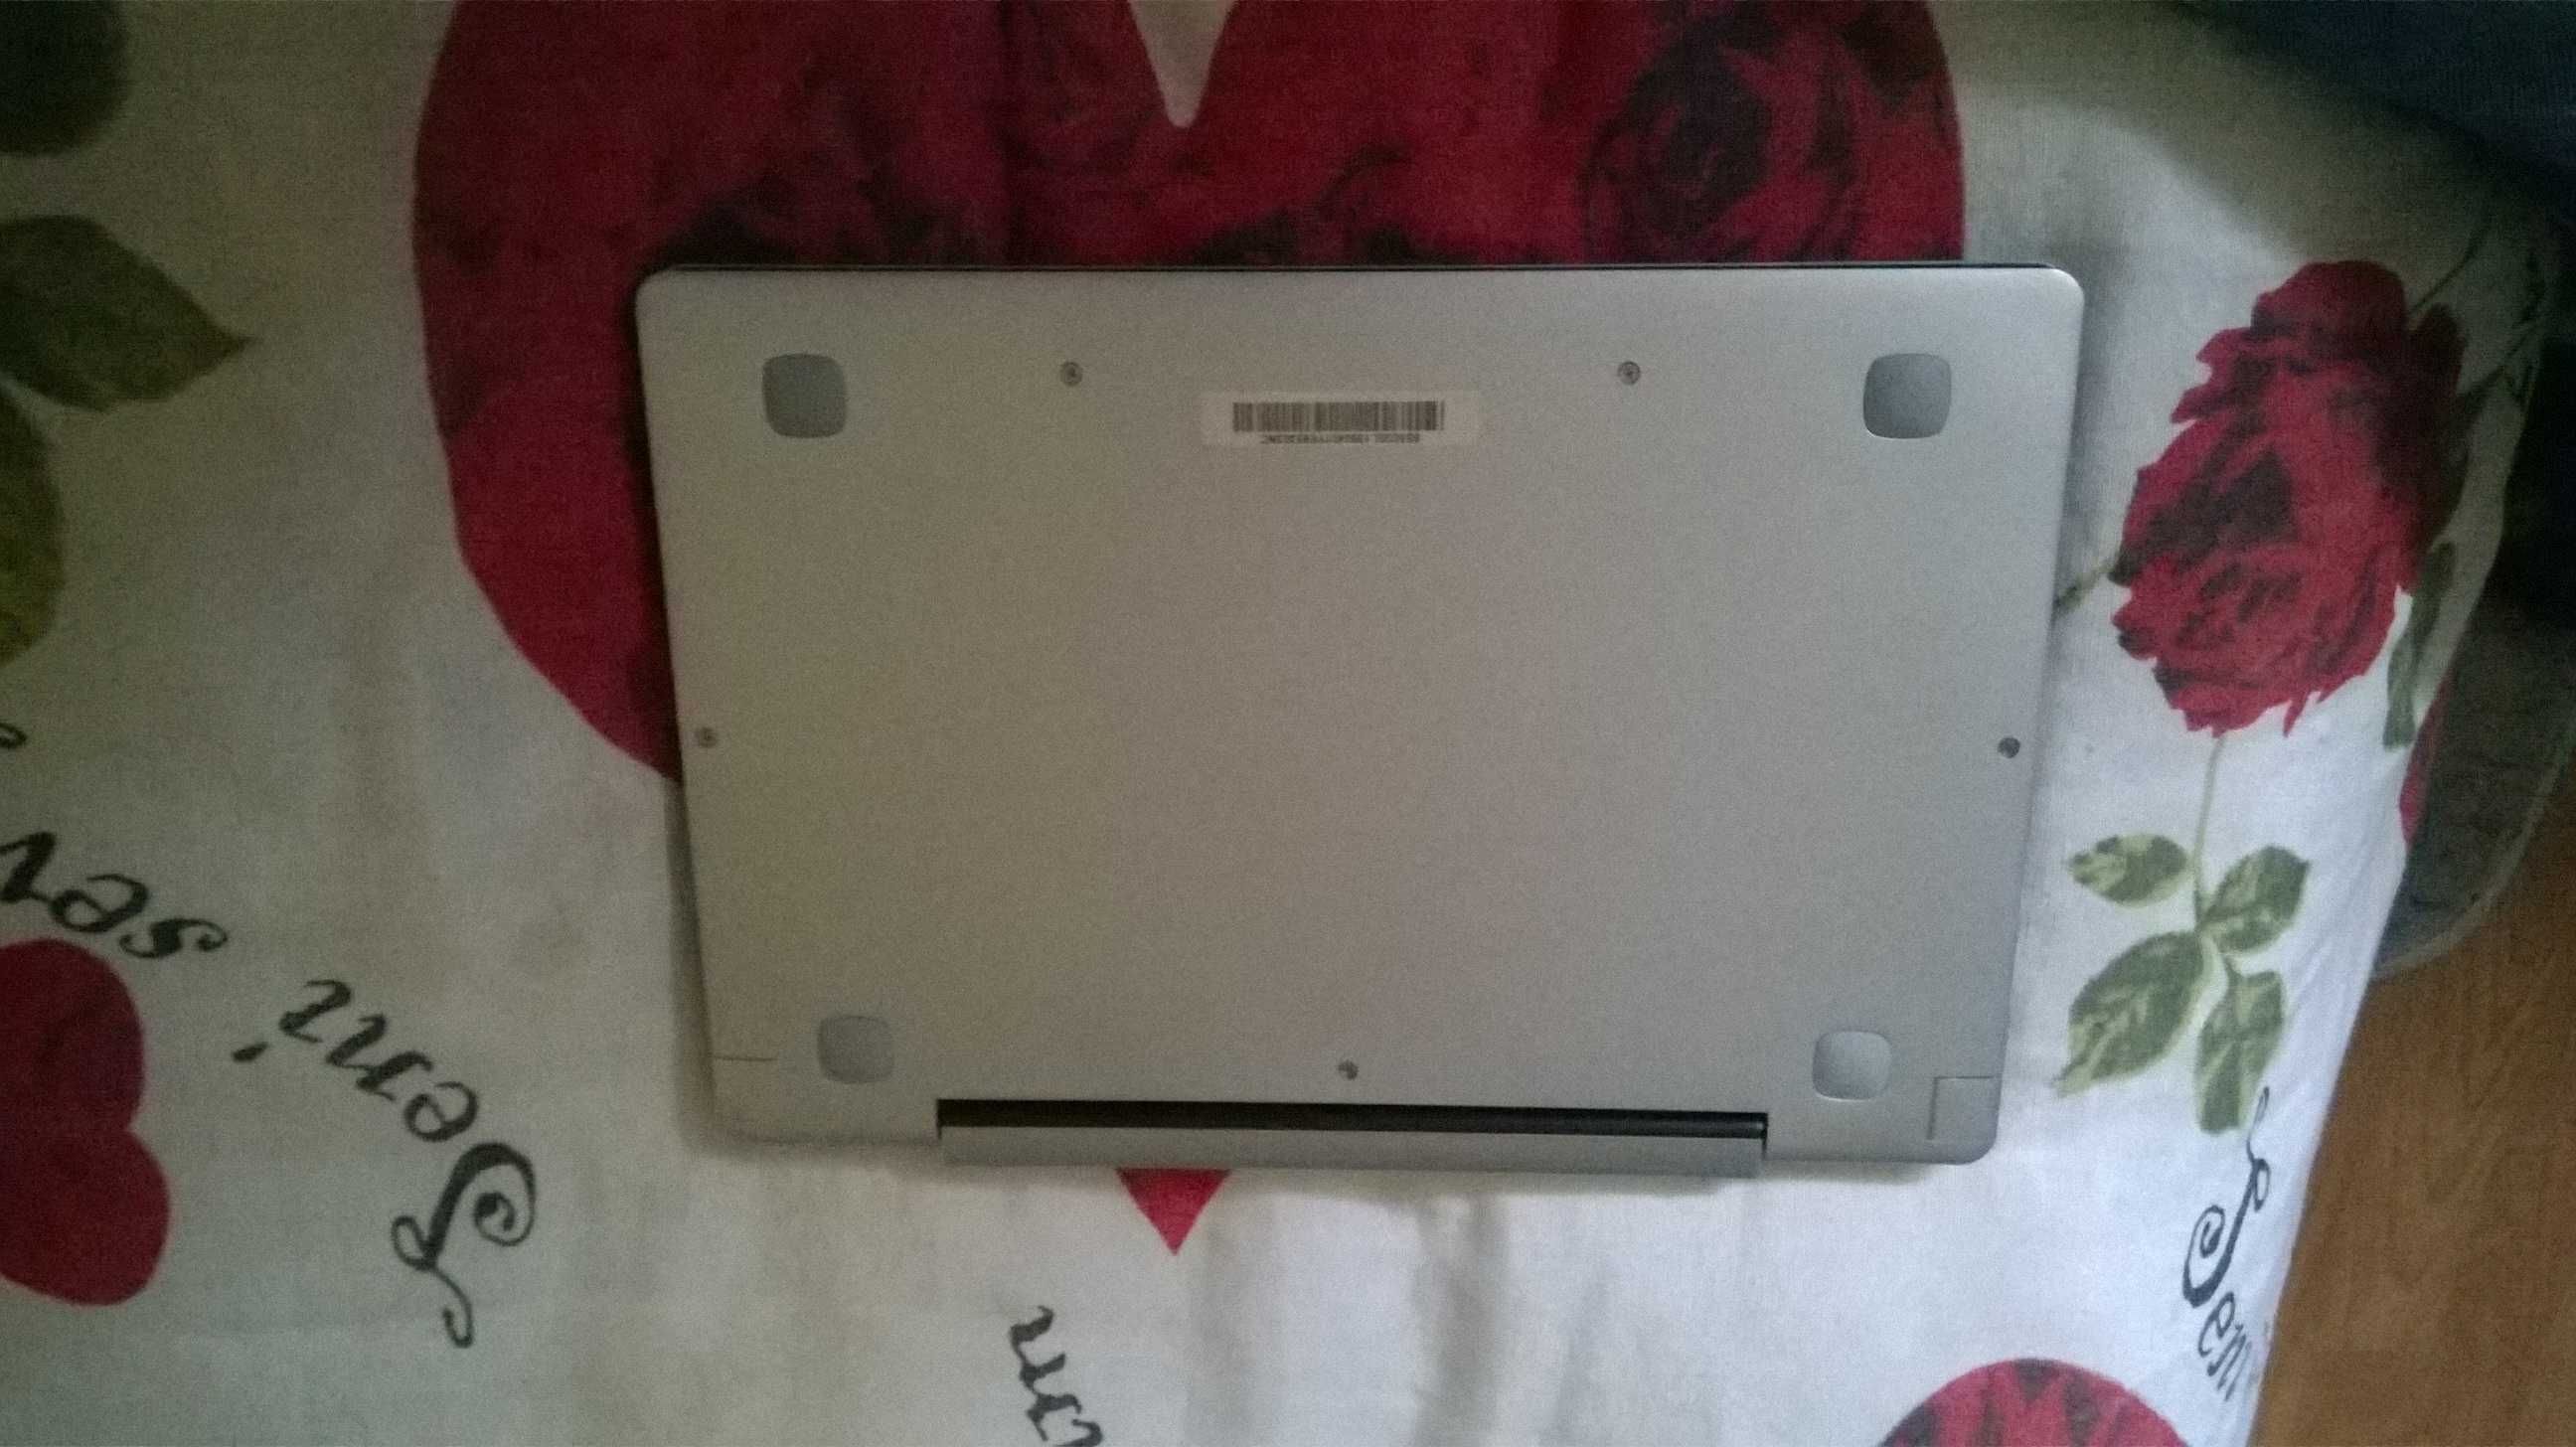 Lenovo MIIX 310-10ICR 2 in 1 Mini PC Tablet